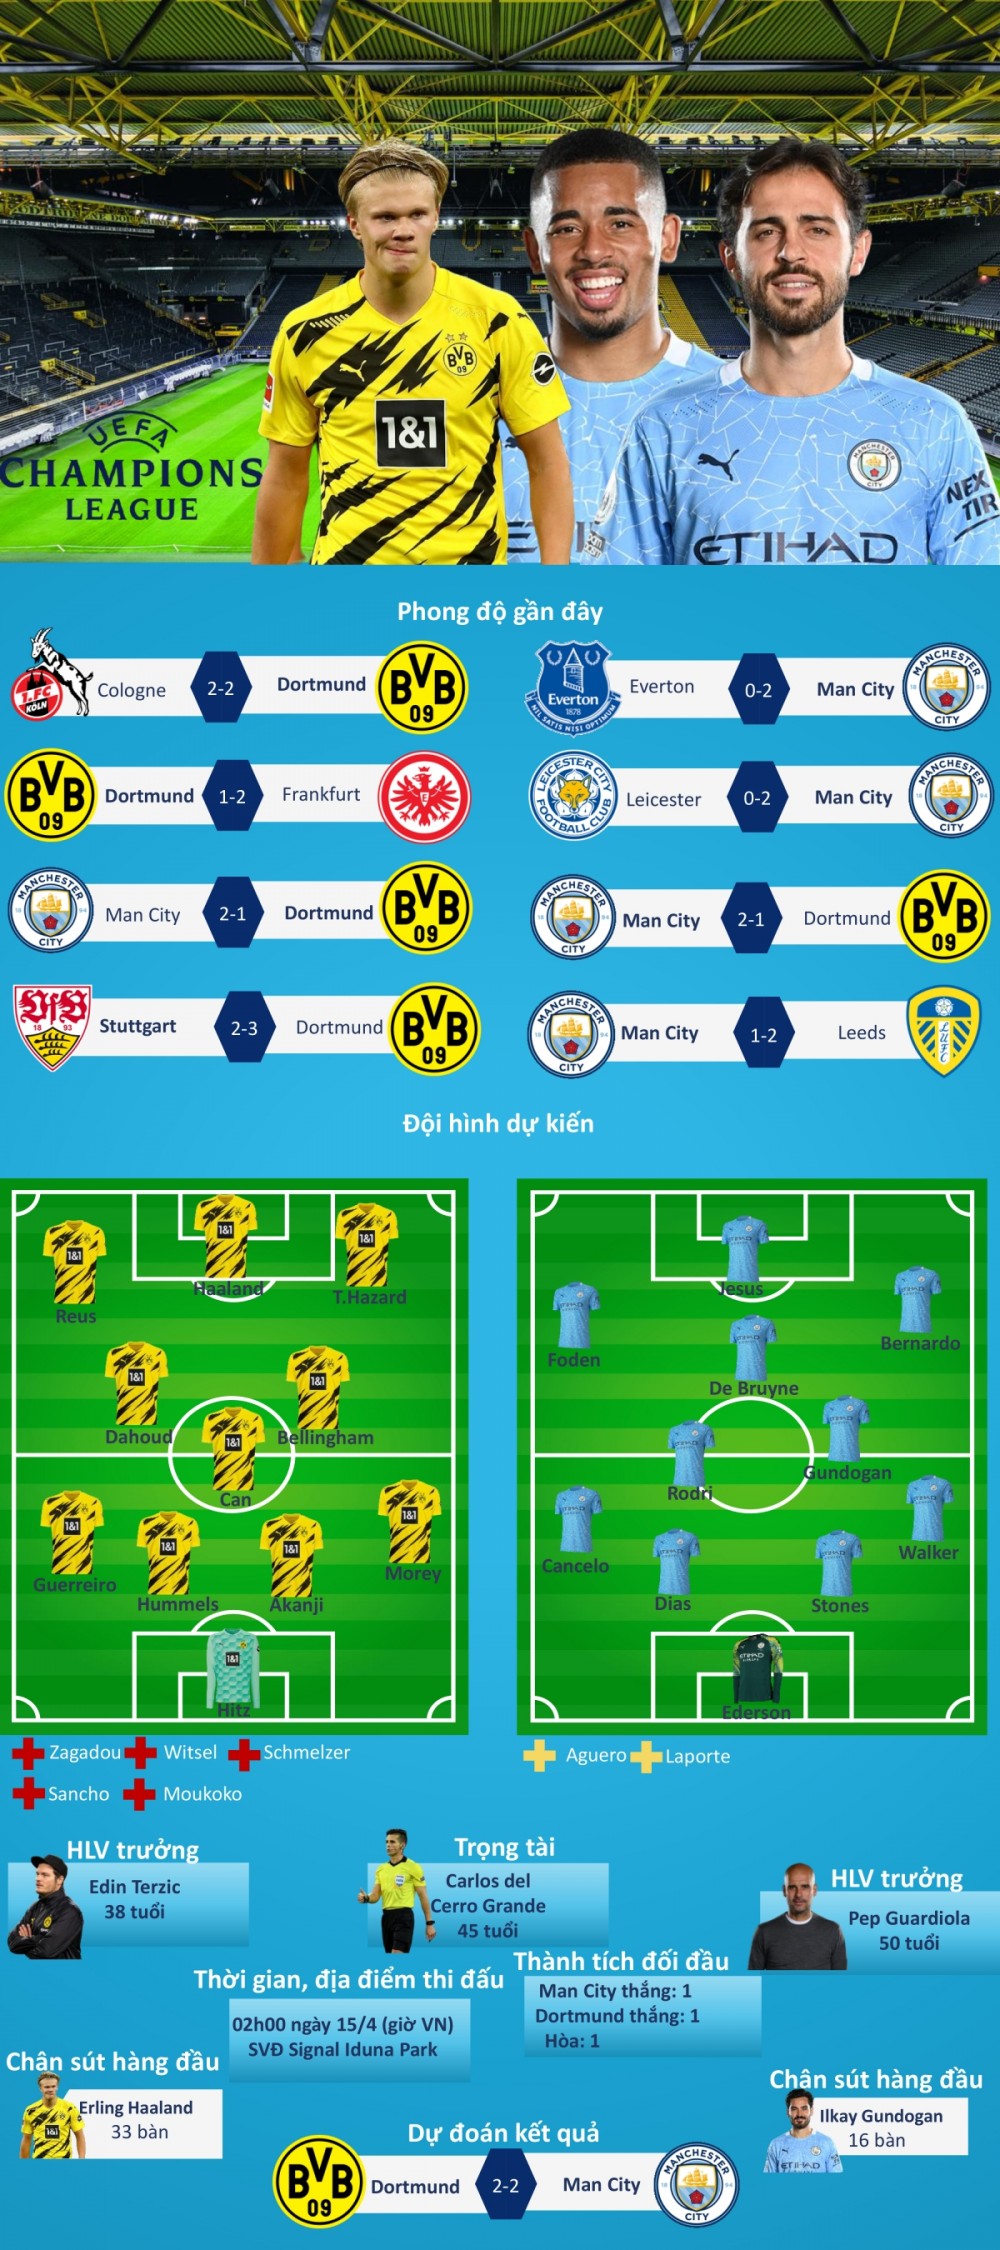 Dự đoán kết quả, đội hình xuất phát, nhận định trước trận Dortmund - Man City